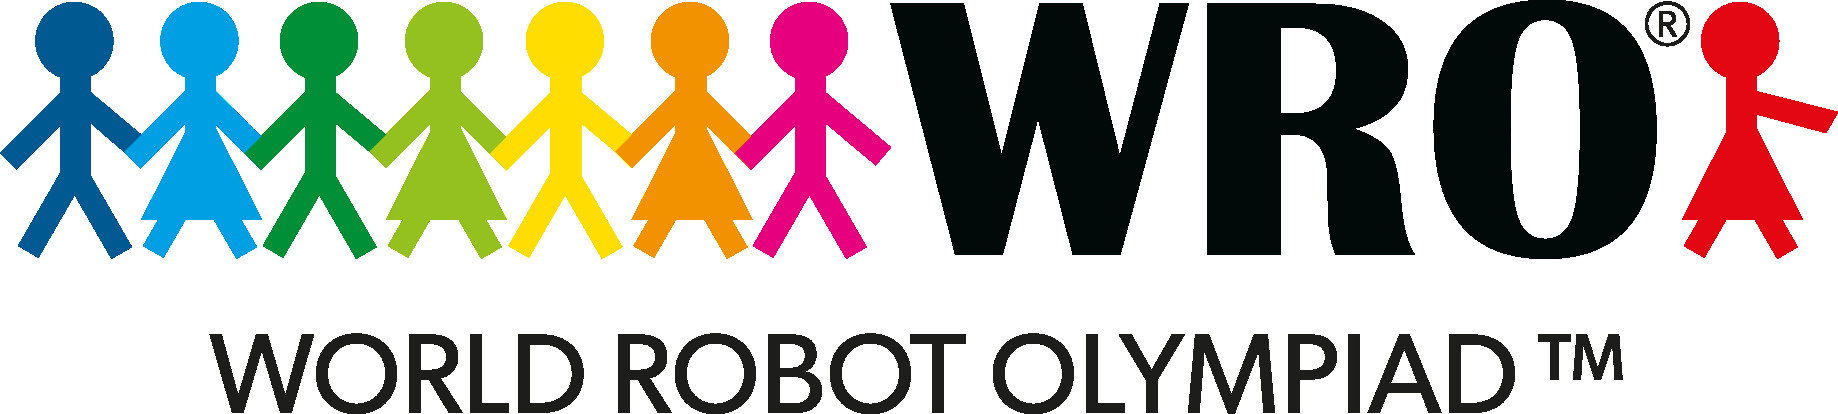 Olimpiada de robótica educativa en Sevilla